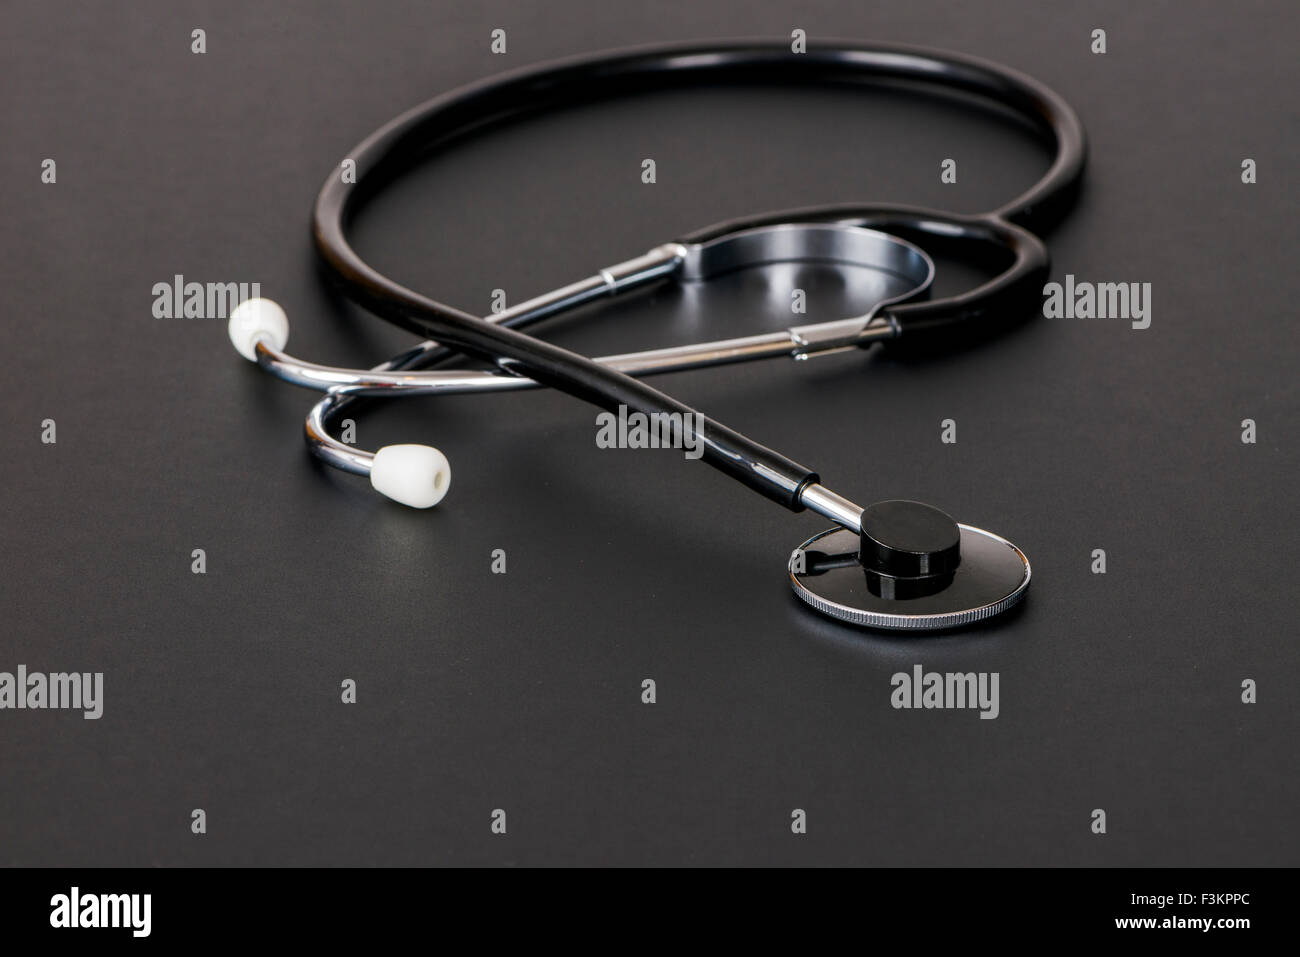 Uno stetoscopio per uso medico, visualizzato su una tavola nera Foto Stock